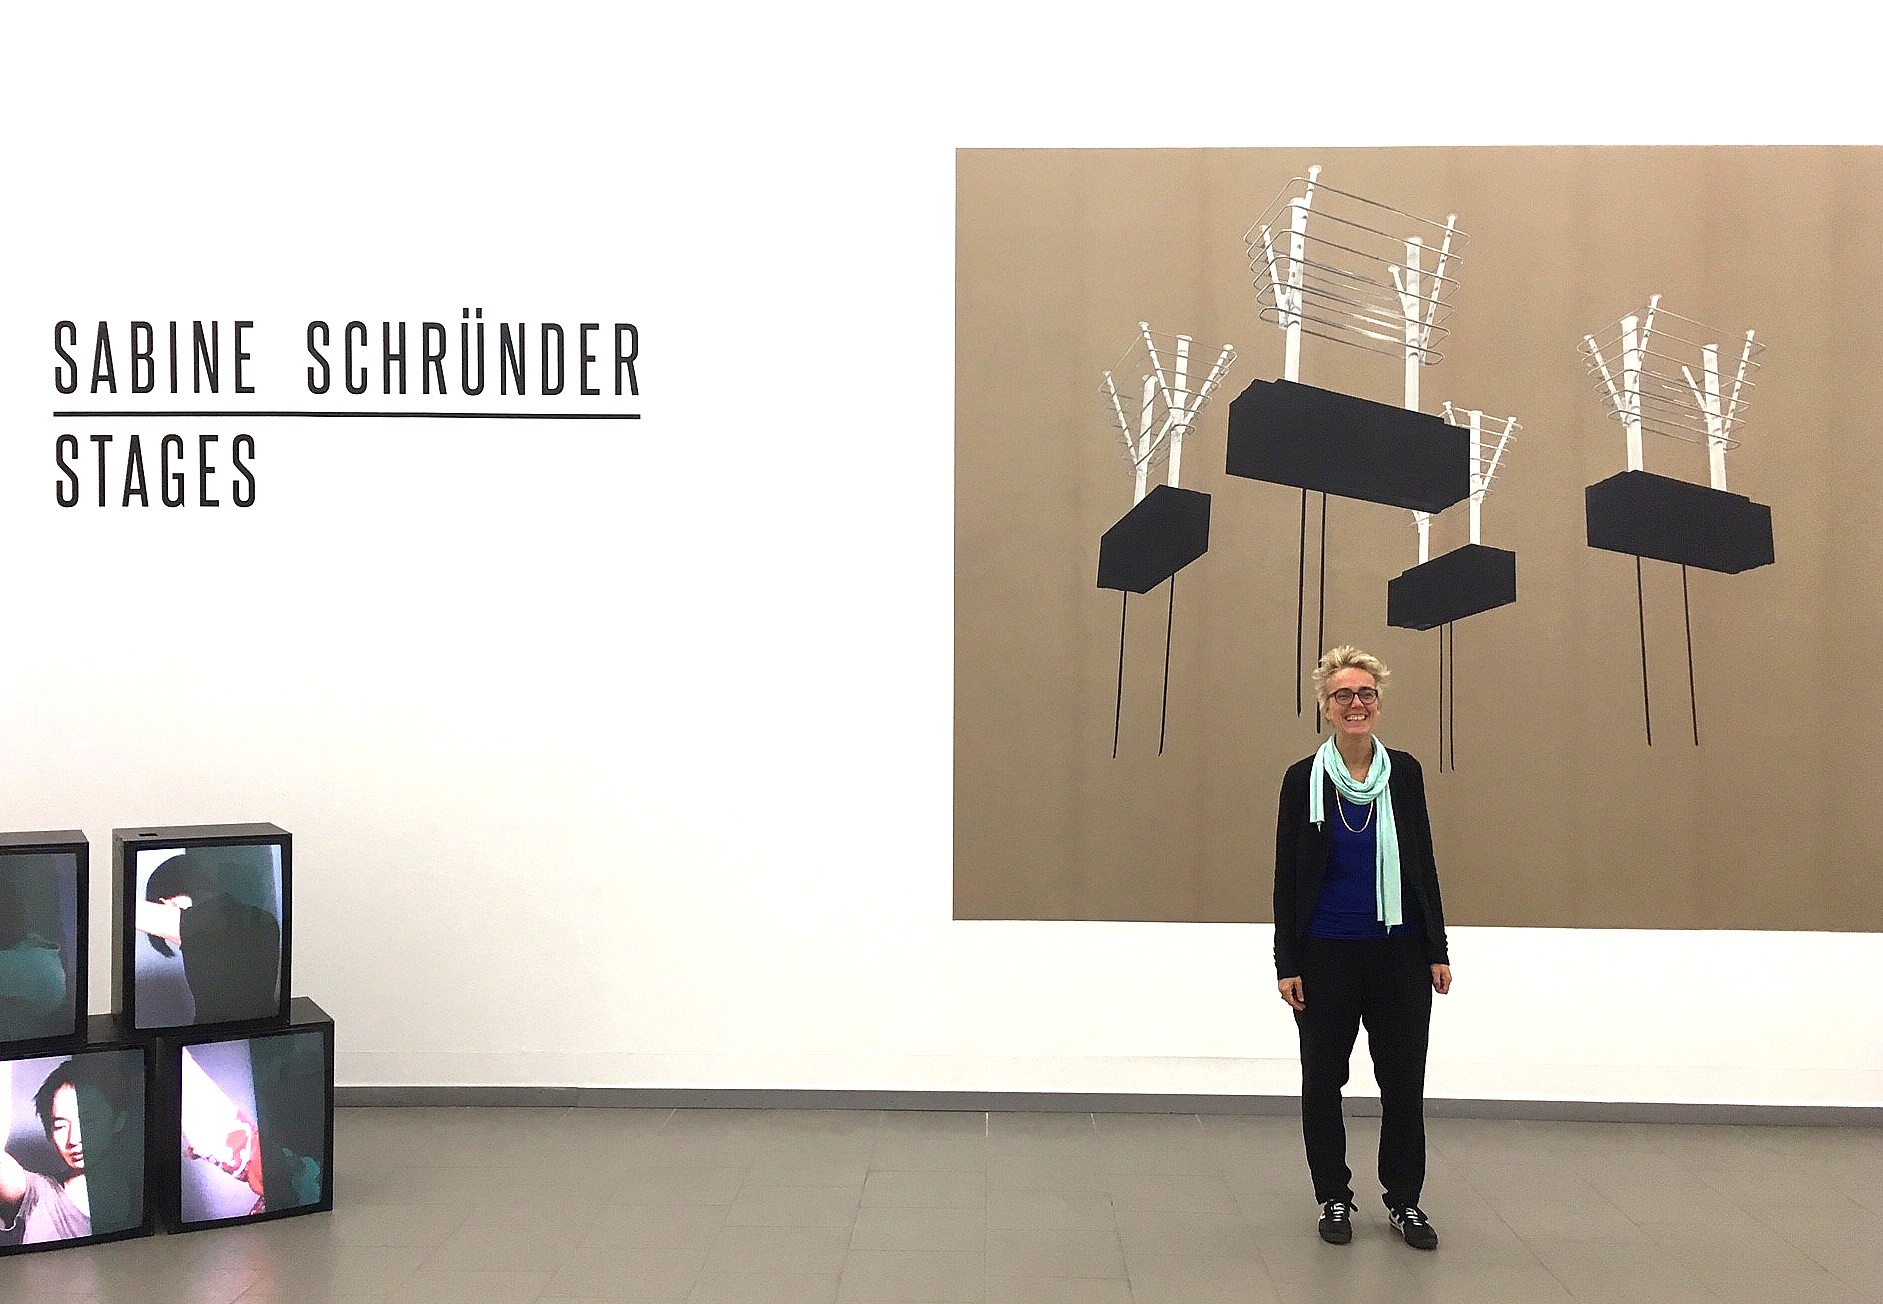 STAGES - Fotoausstellung Sabine Schründer